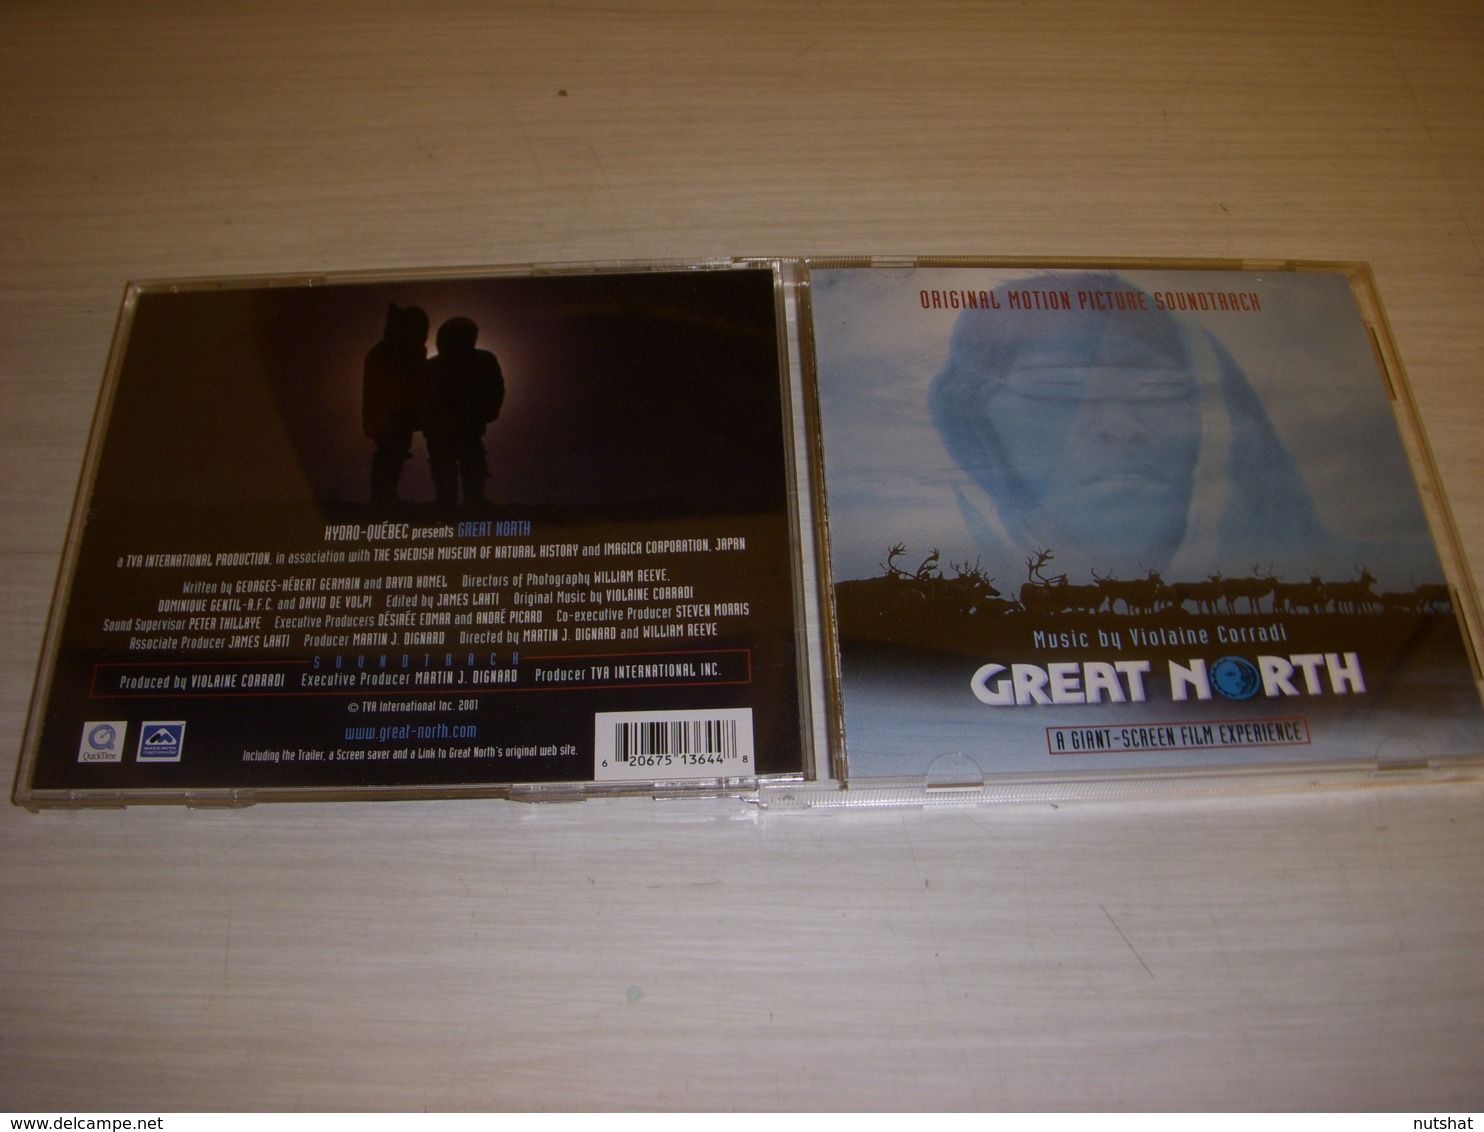 CD MUSIQUE BANDE ORIGINALE FILM GREAT NORTH - 1993 - Music Violaine CORRADI - Soundtracks, Film Music